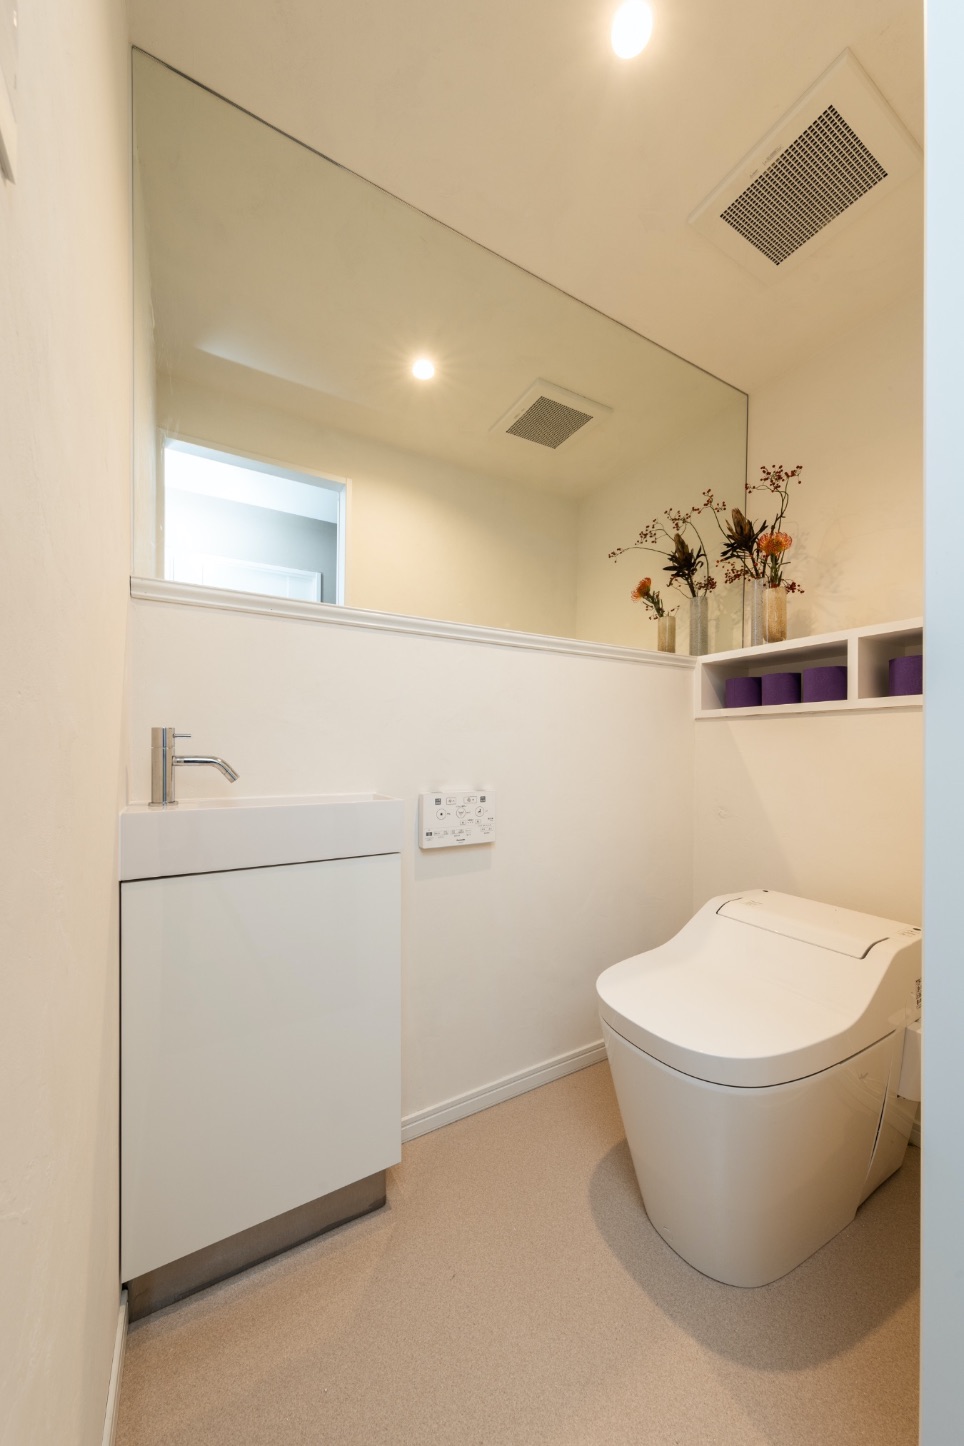 壁を漆喰で仕上げ消臭性と調湿性を高めたトイレ。幅いっぱいのミラーで広く見える工夫も。